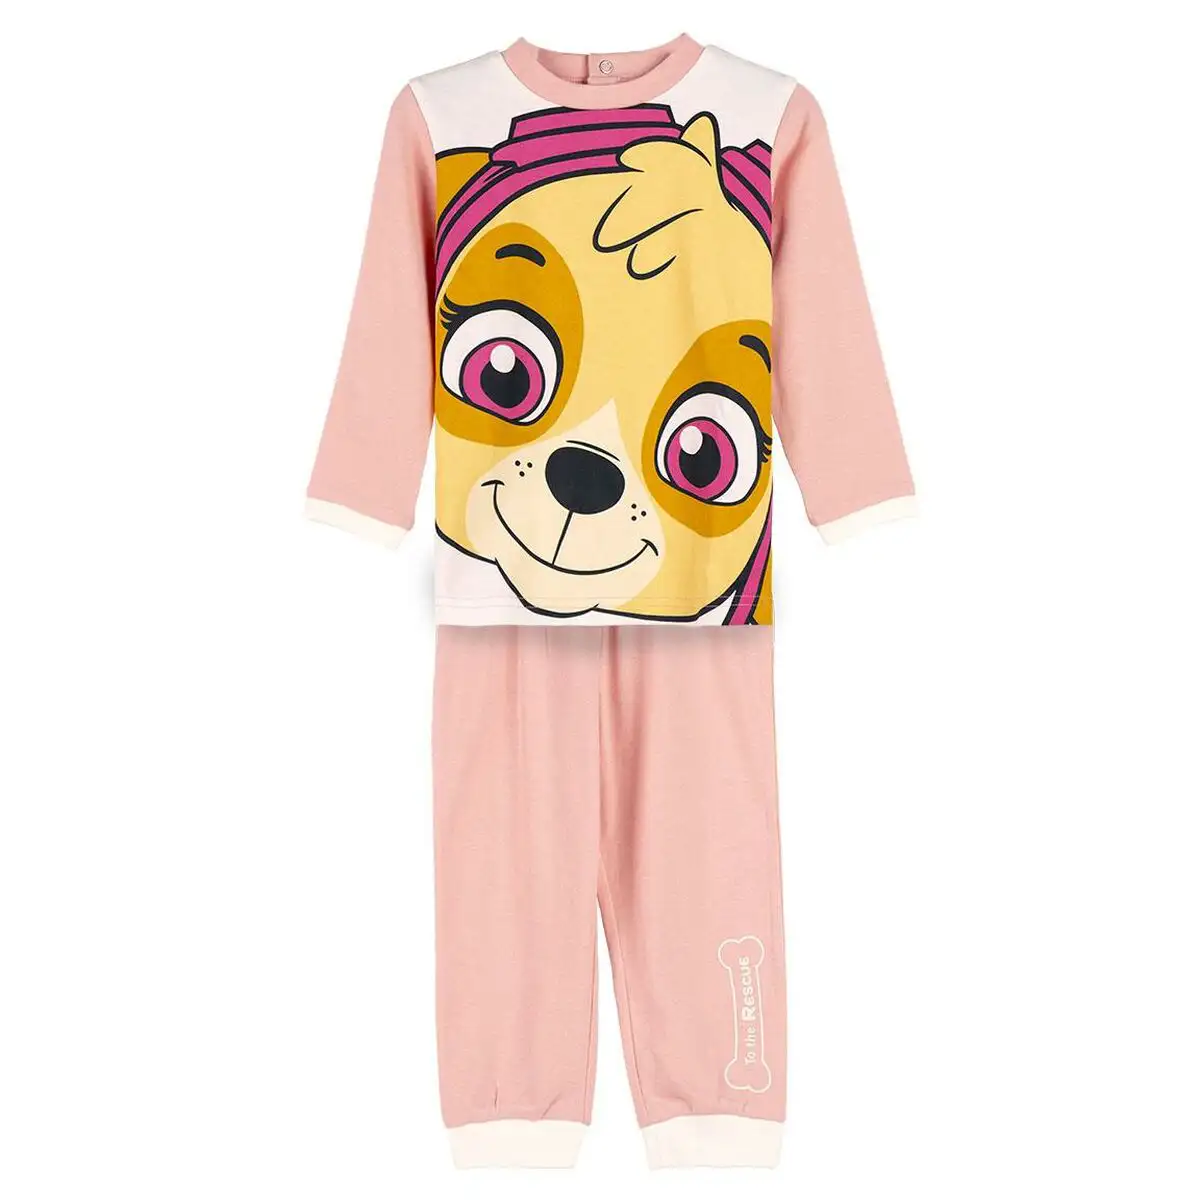 Pyjama enfant the paw patrol rose_3232. DIAYTAR SENEGAL - L'Art de Choisir, l'Art de S'émerveiller. Explorez notre boutique en ligne et choisissez des articles qui éveillent votre sens de l'émerveillement.